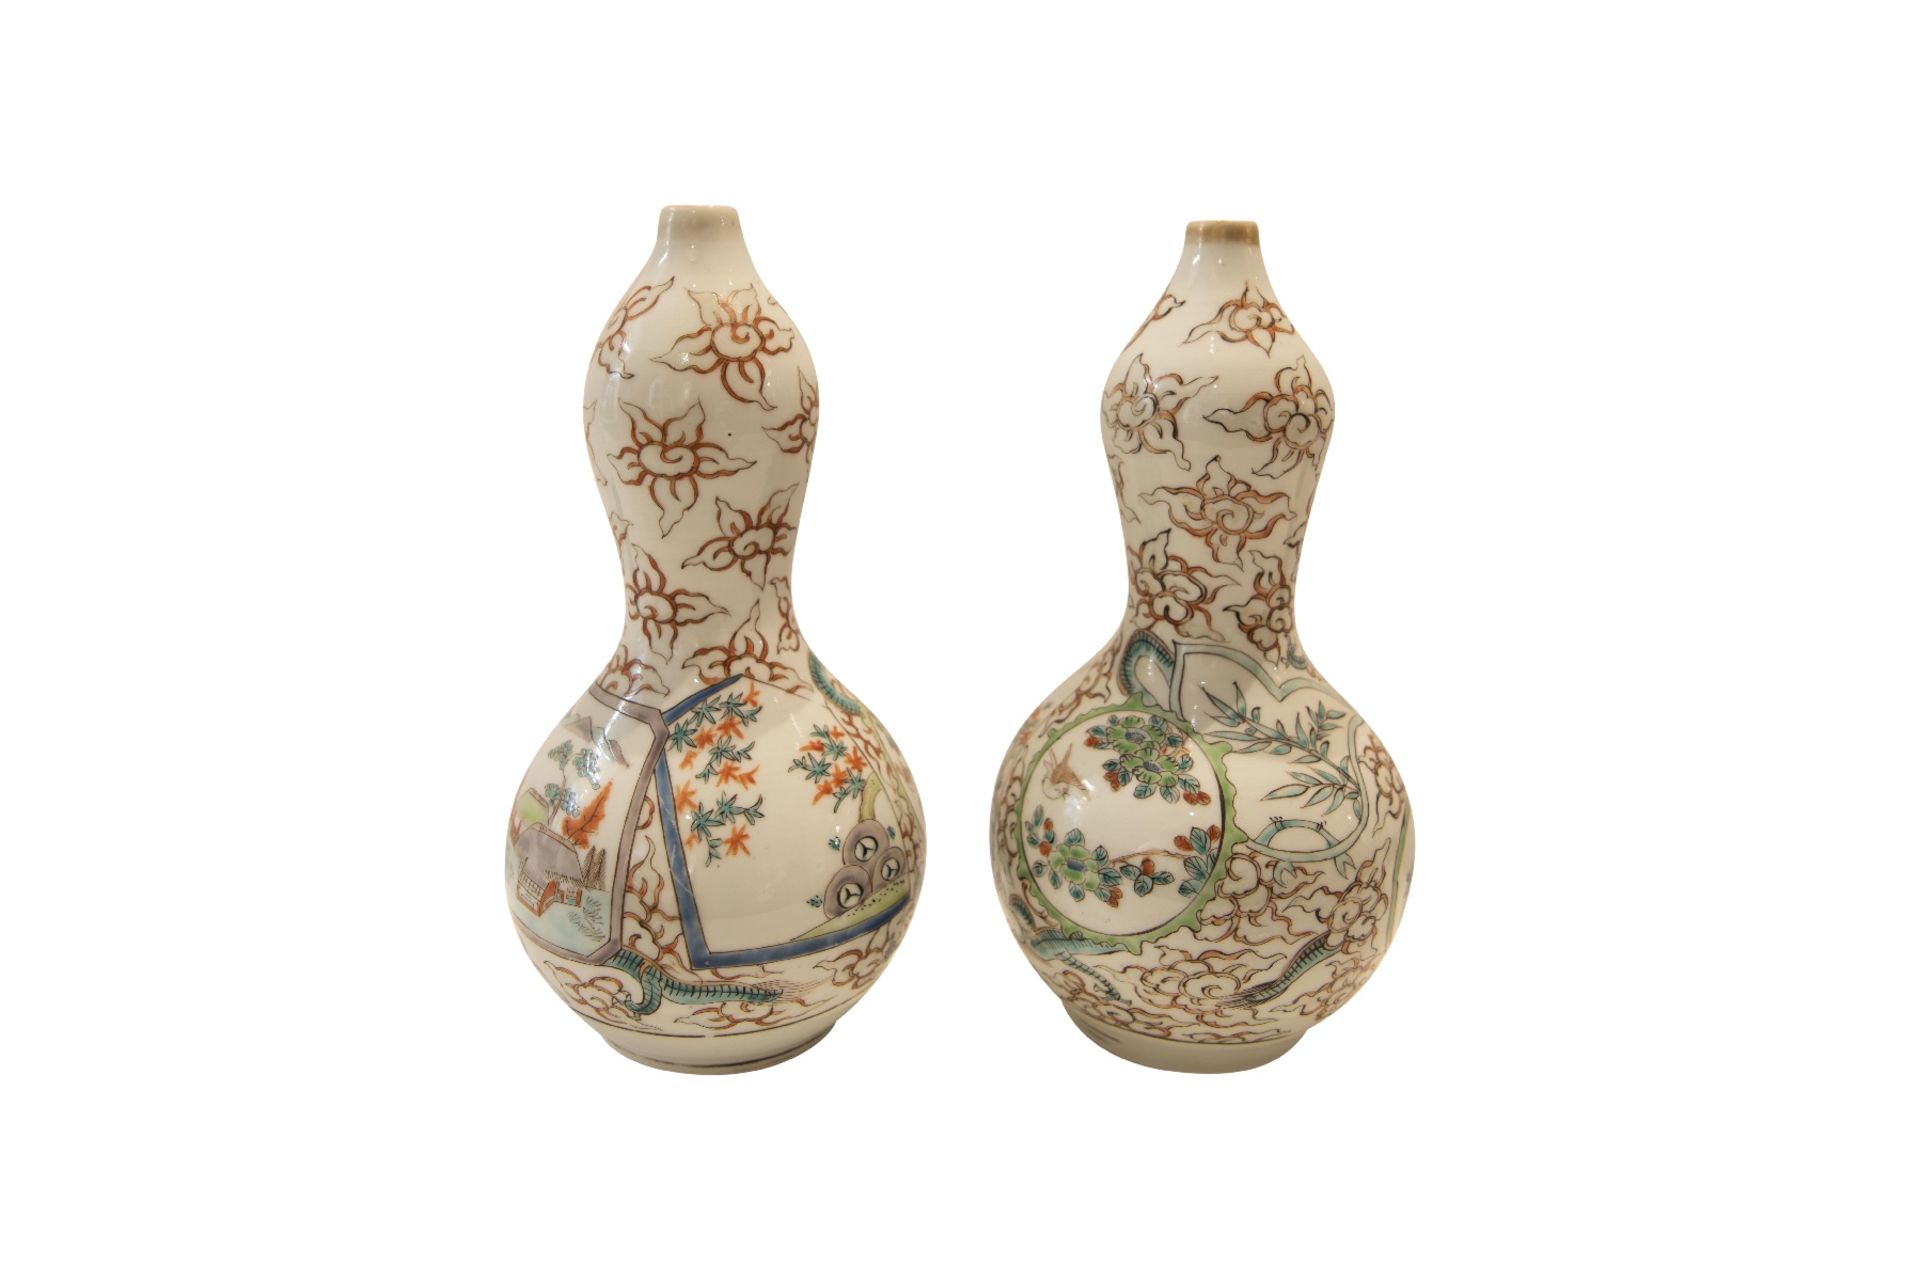 Zwei Asiatische Vasen | Two Asian vases - Bild 3 aus 5